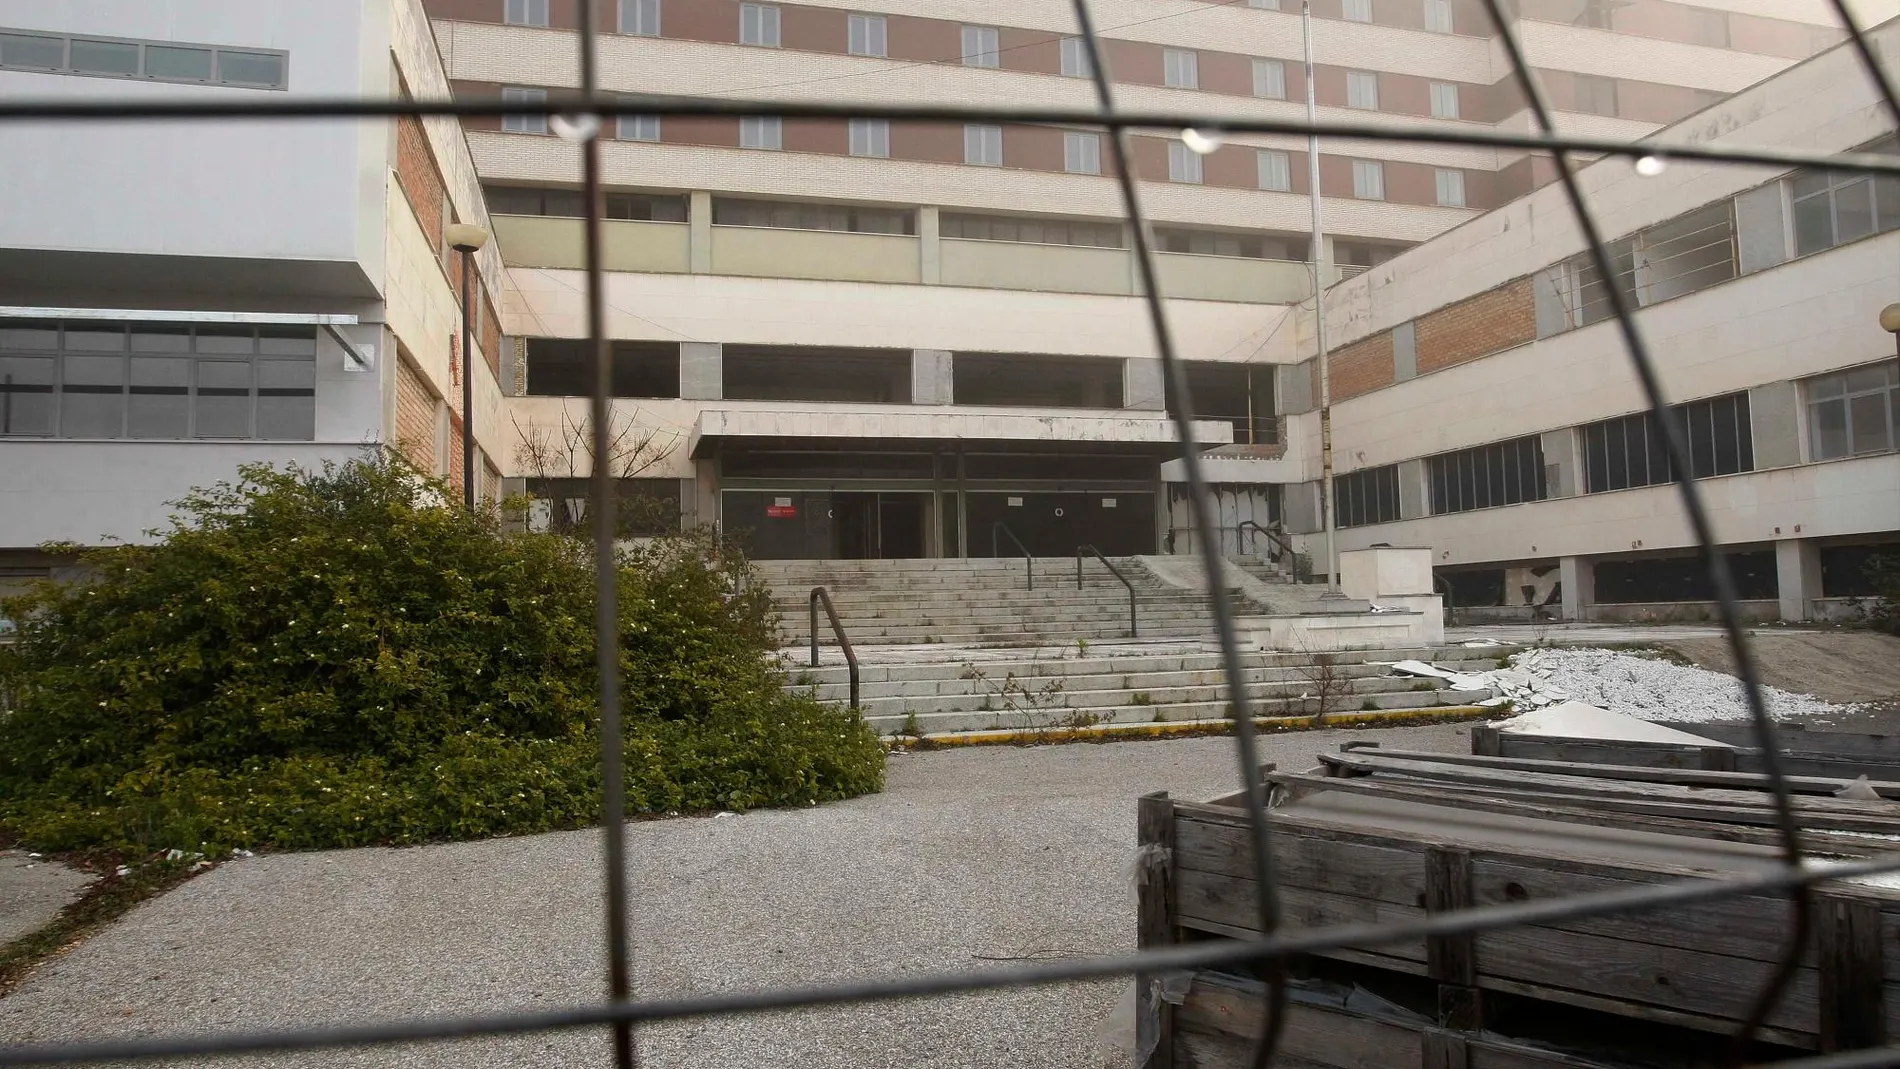 El Hospital Militar de Sevilla se encuentra en estado ruinoso tras asumir la Junta su gestión / Foto: Manuel Olmedo